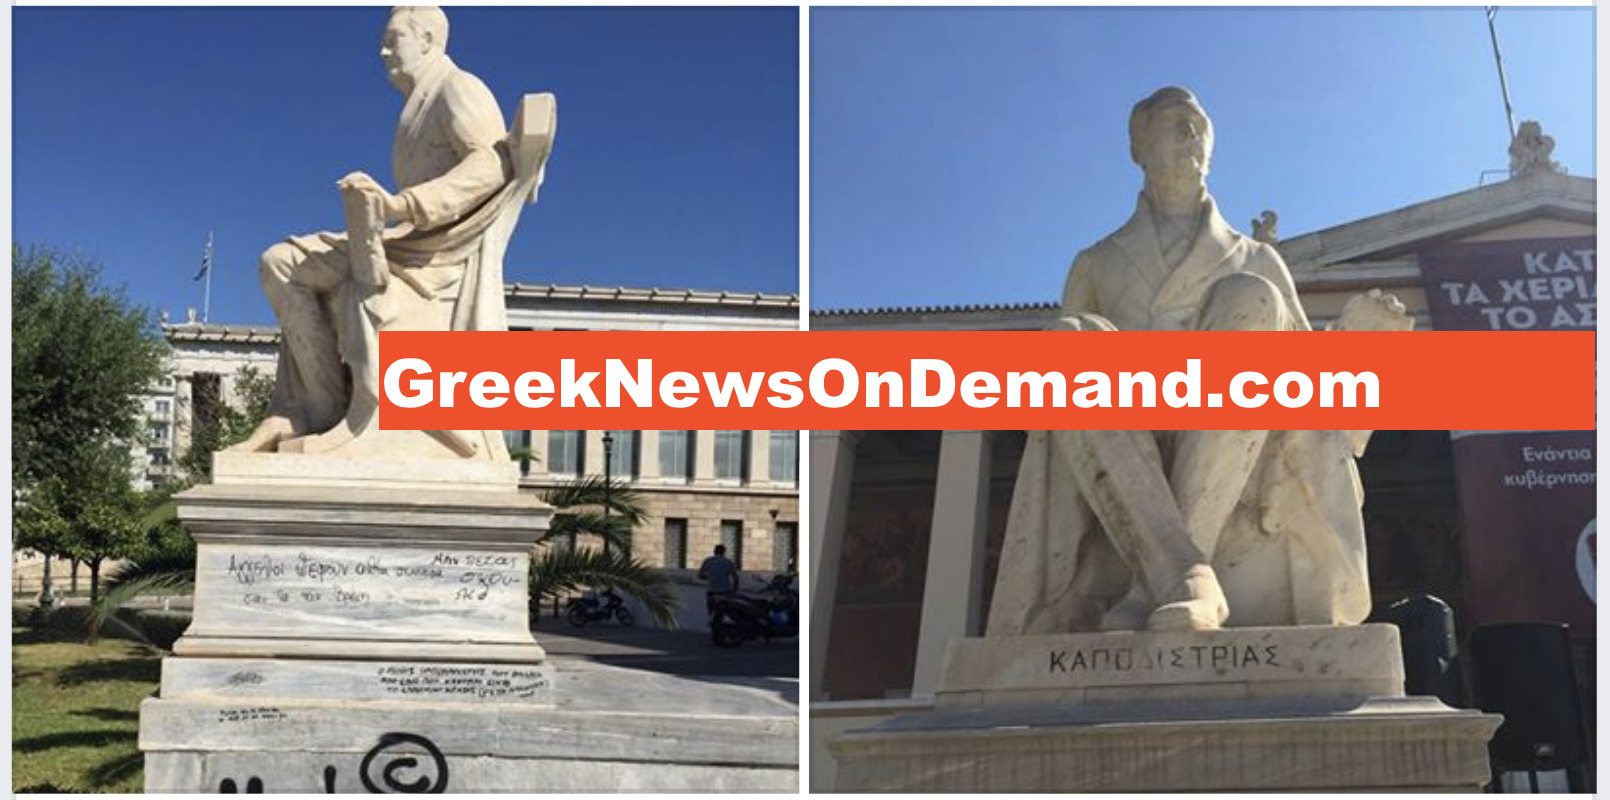 Δείτε τι έχουν κάνει στα αγάλματα του Καποδιστρία & του Κοραή αυτοί που θέλουν «άσυλο» στο Πανεπιστήμιο!